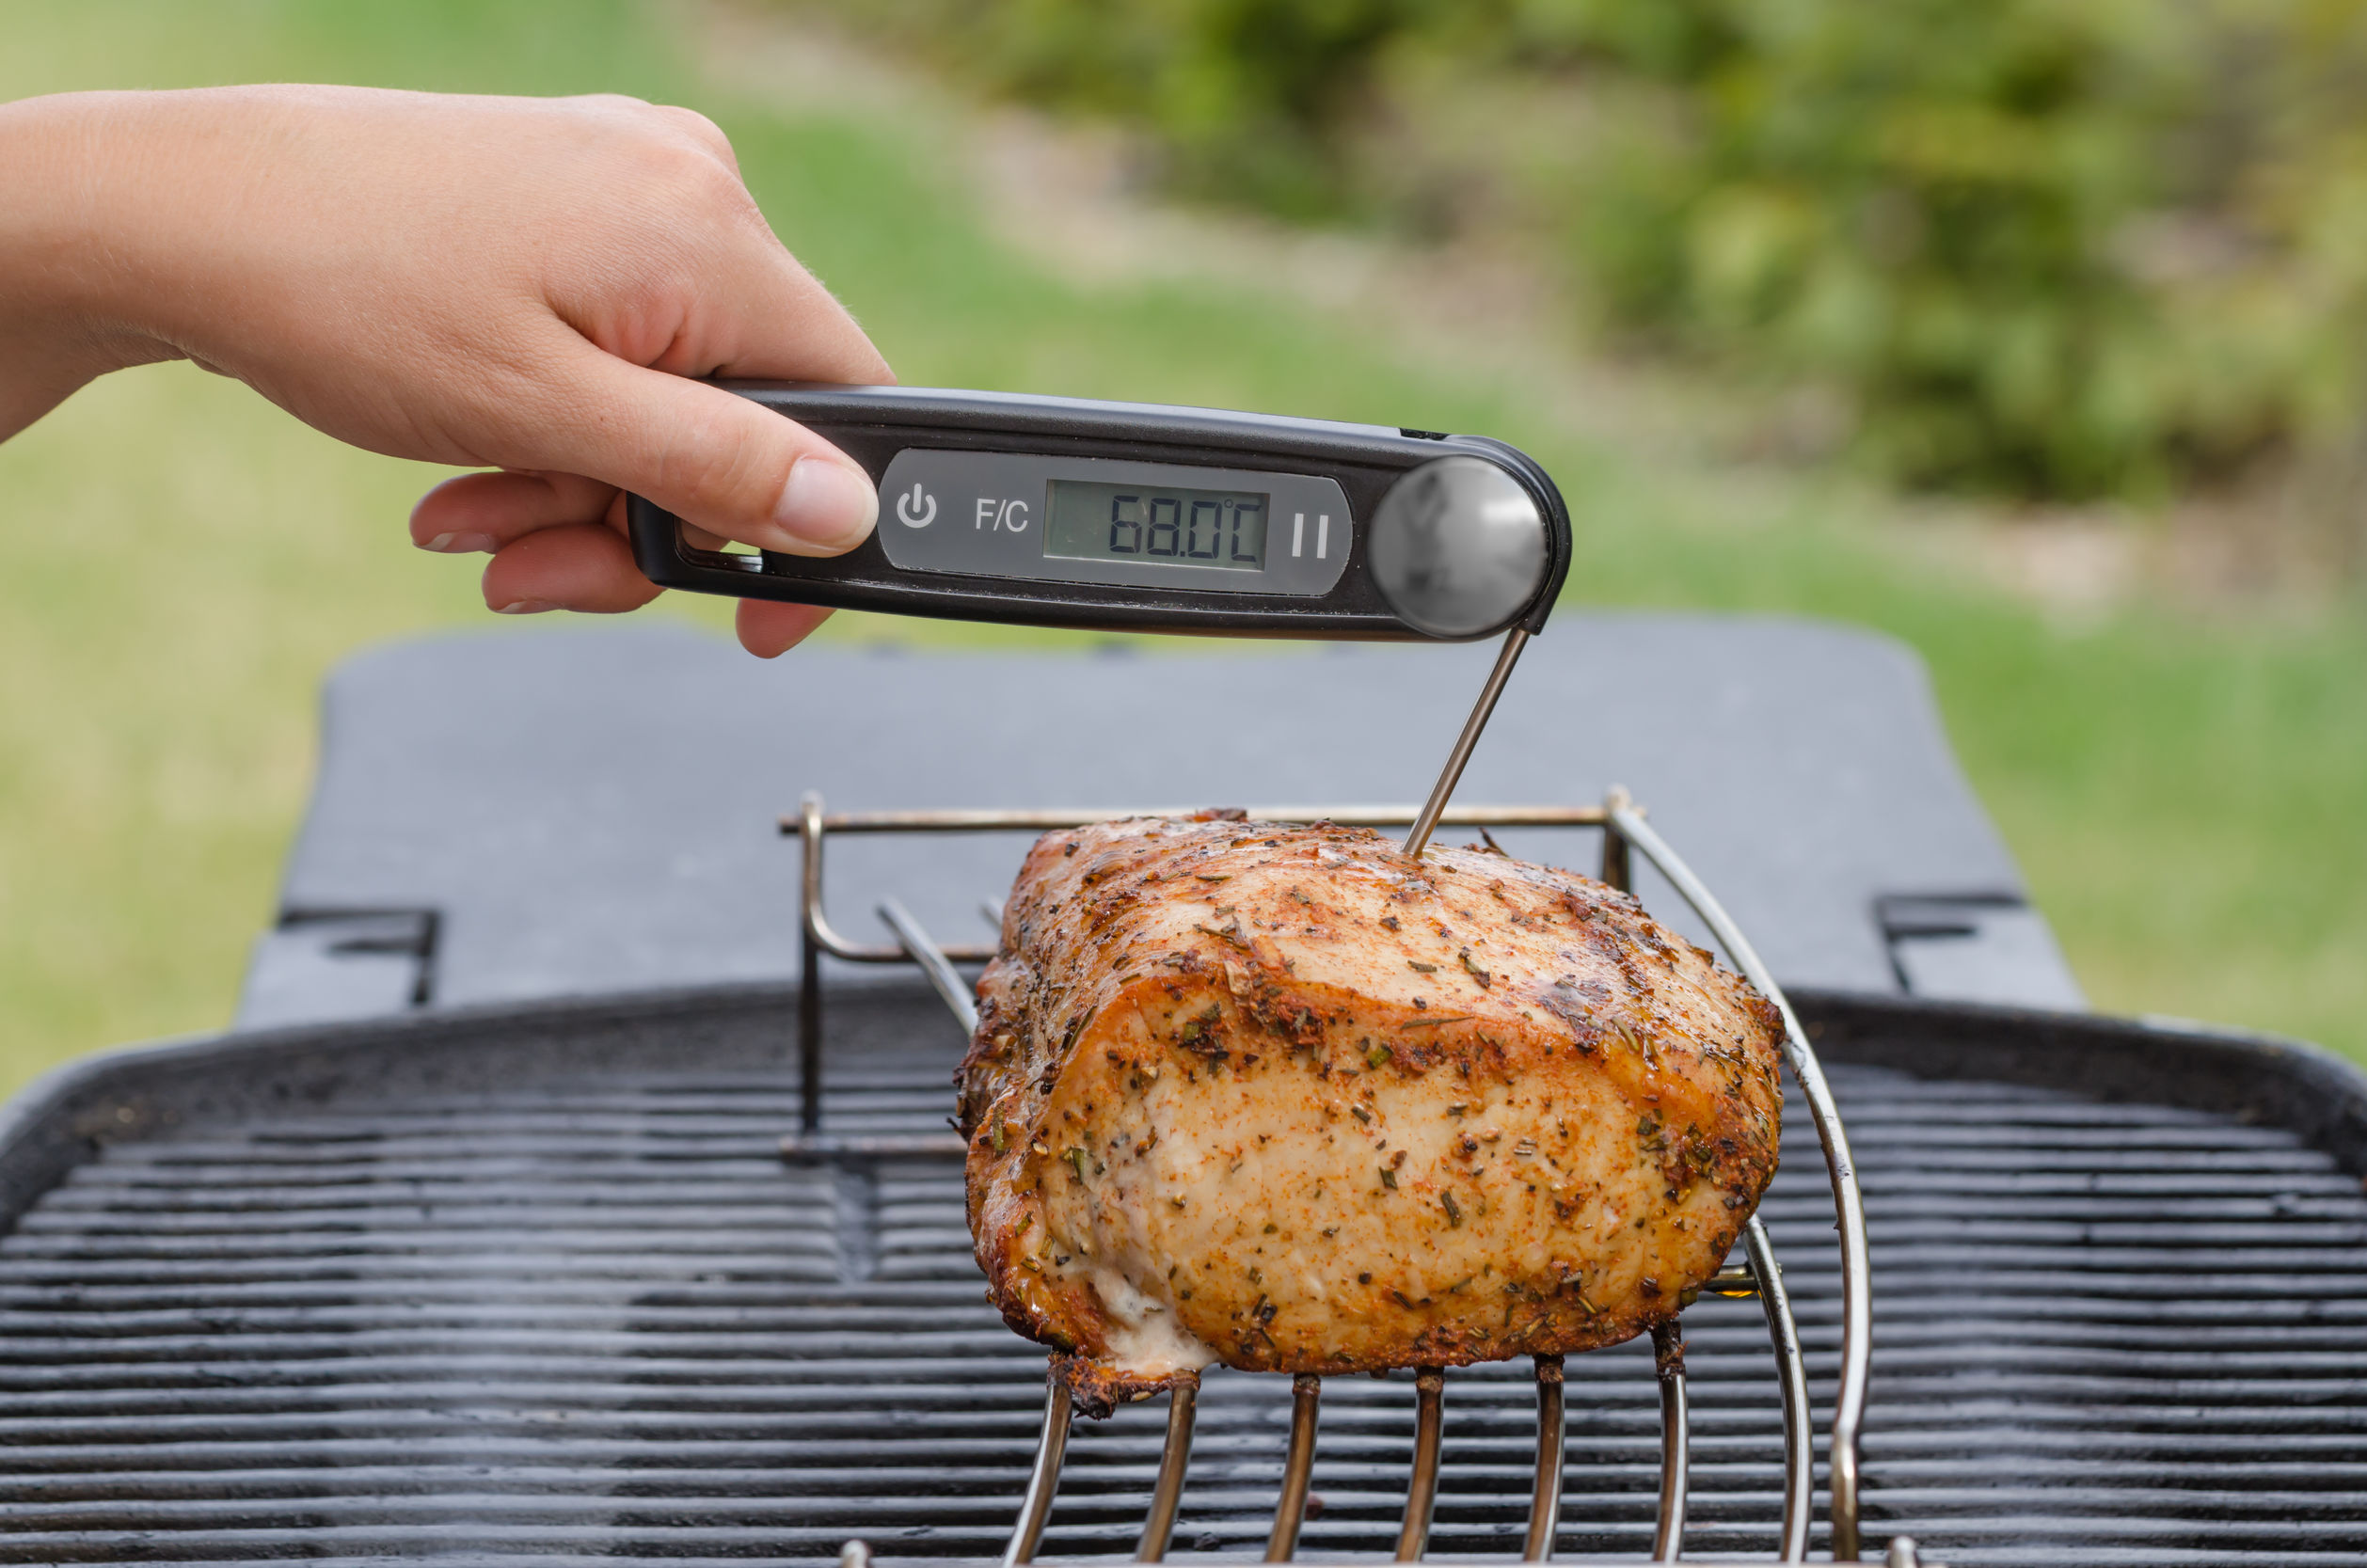 LeeBoom Acciaio Inossidabile Griglia per Barbecue termometro di Carne termostato Manometro Cooking Tools Sonda Cucina Probe 